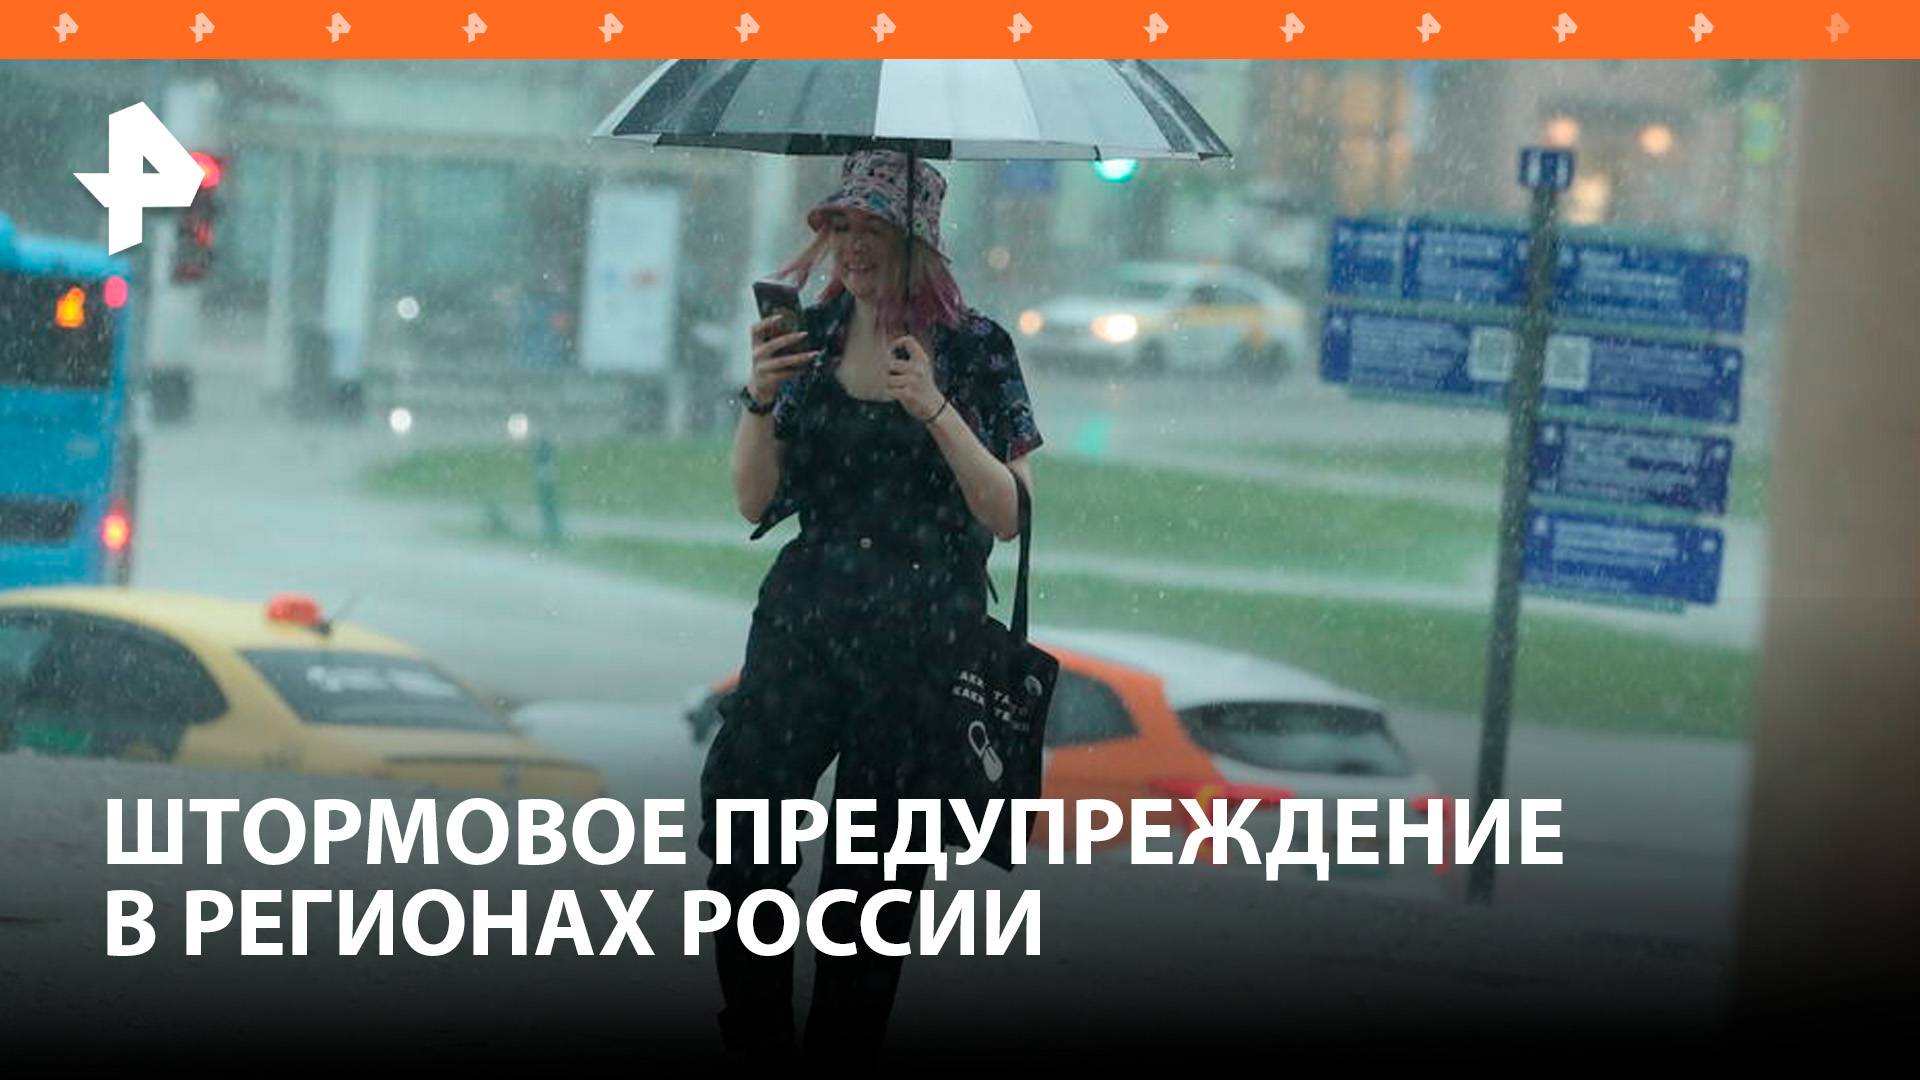 Штормовое предупреждение объявлено в регионах / РЕН Новости